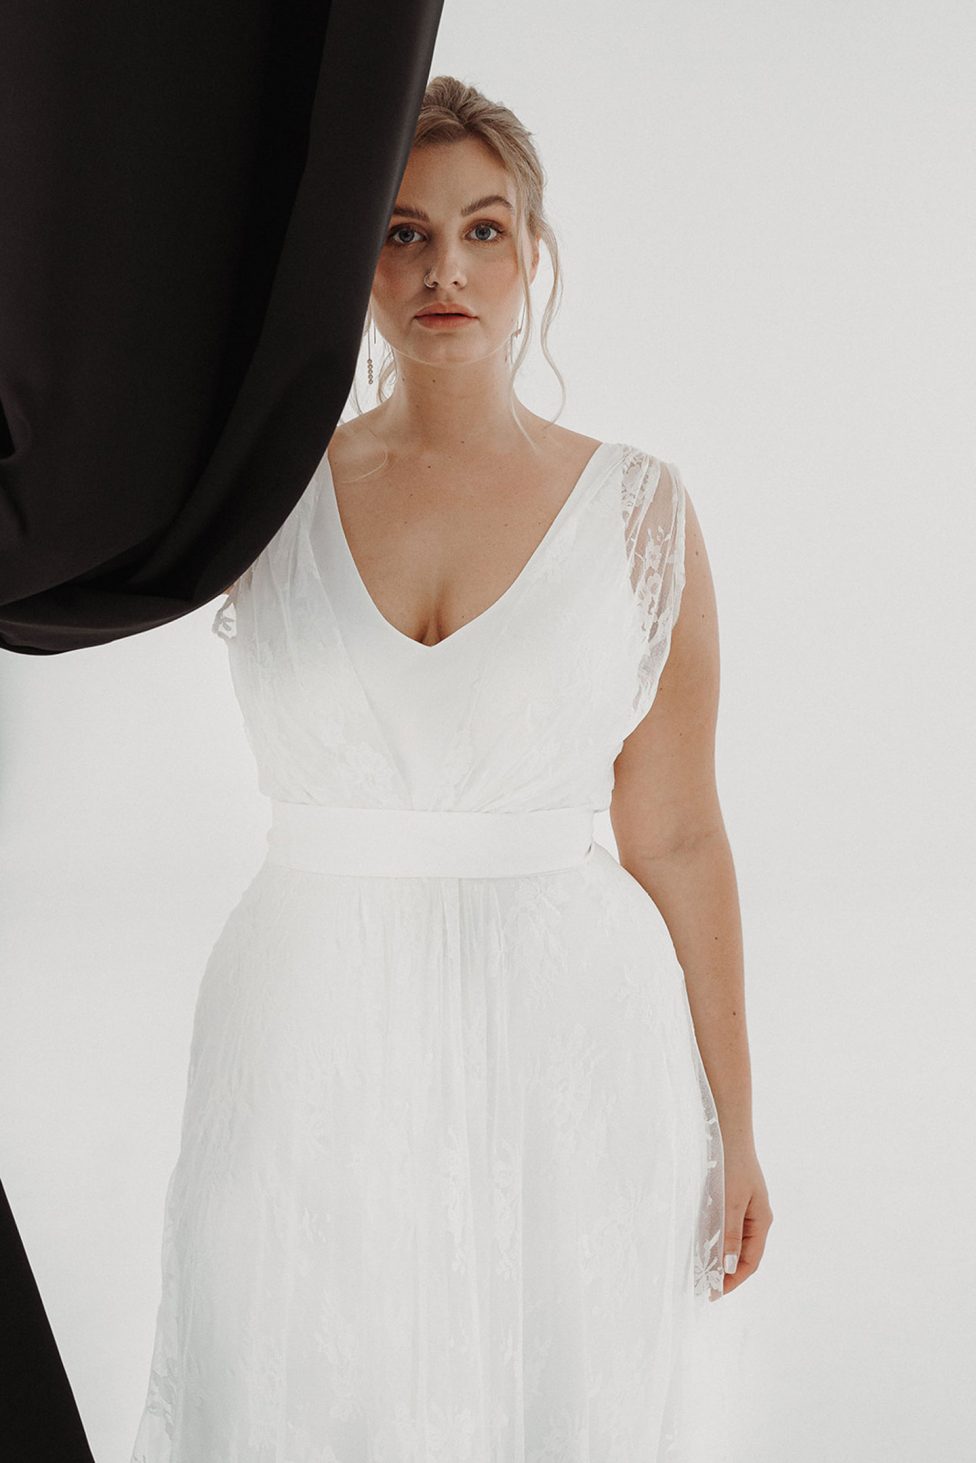 Minimalistische Brautkleider für jede Braut